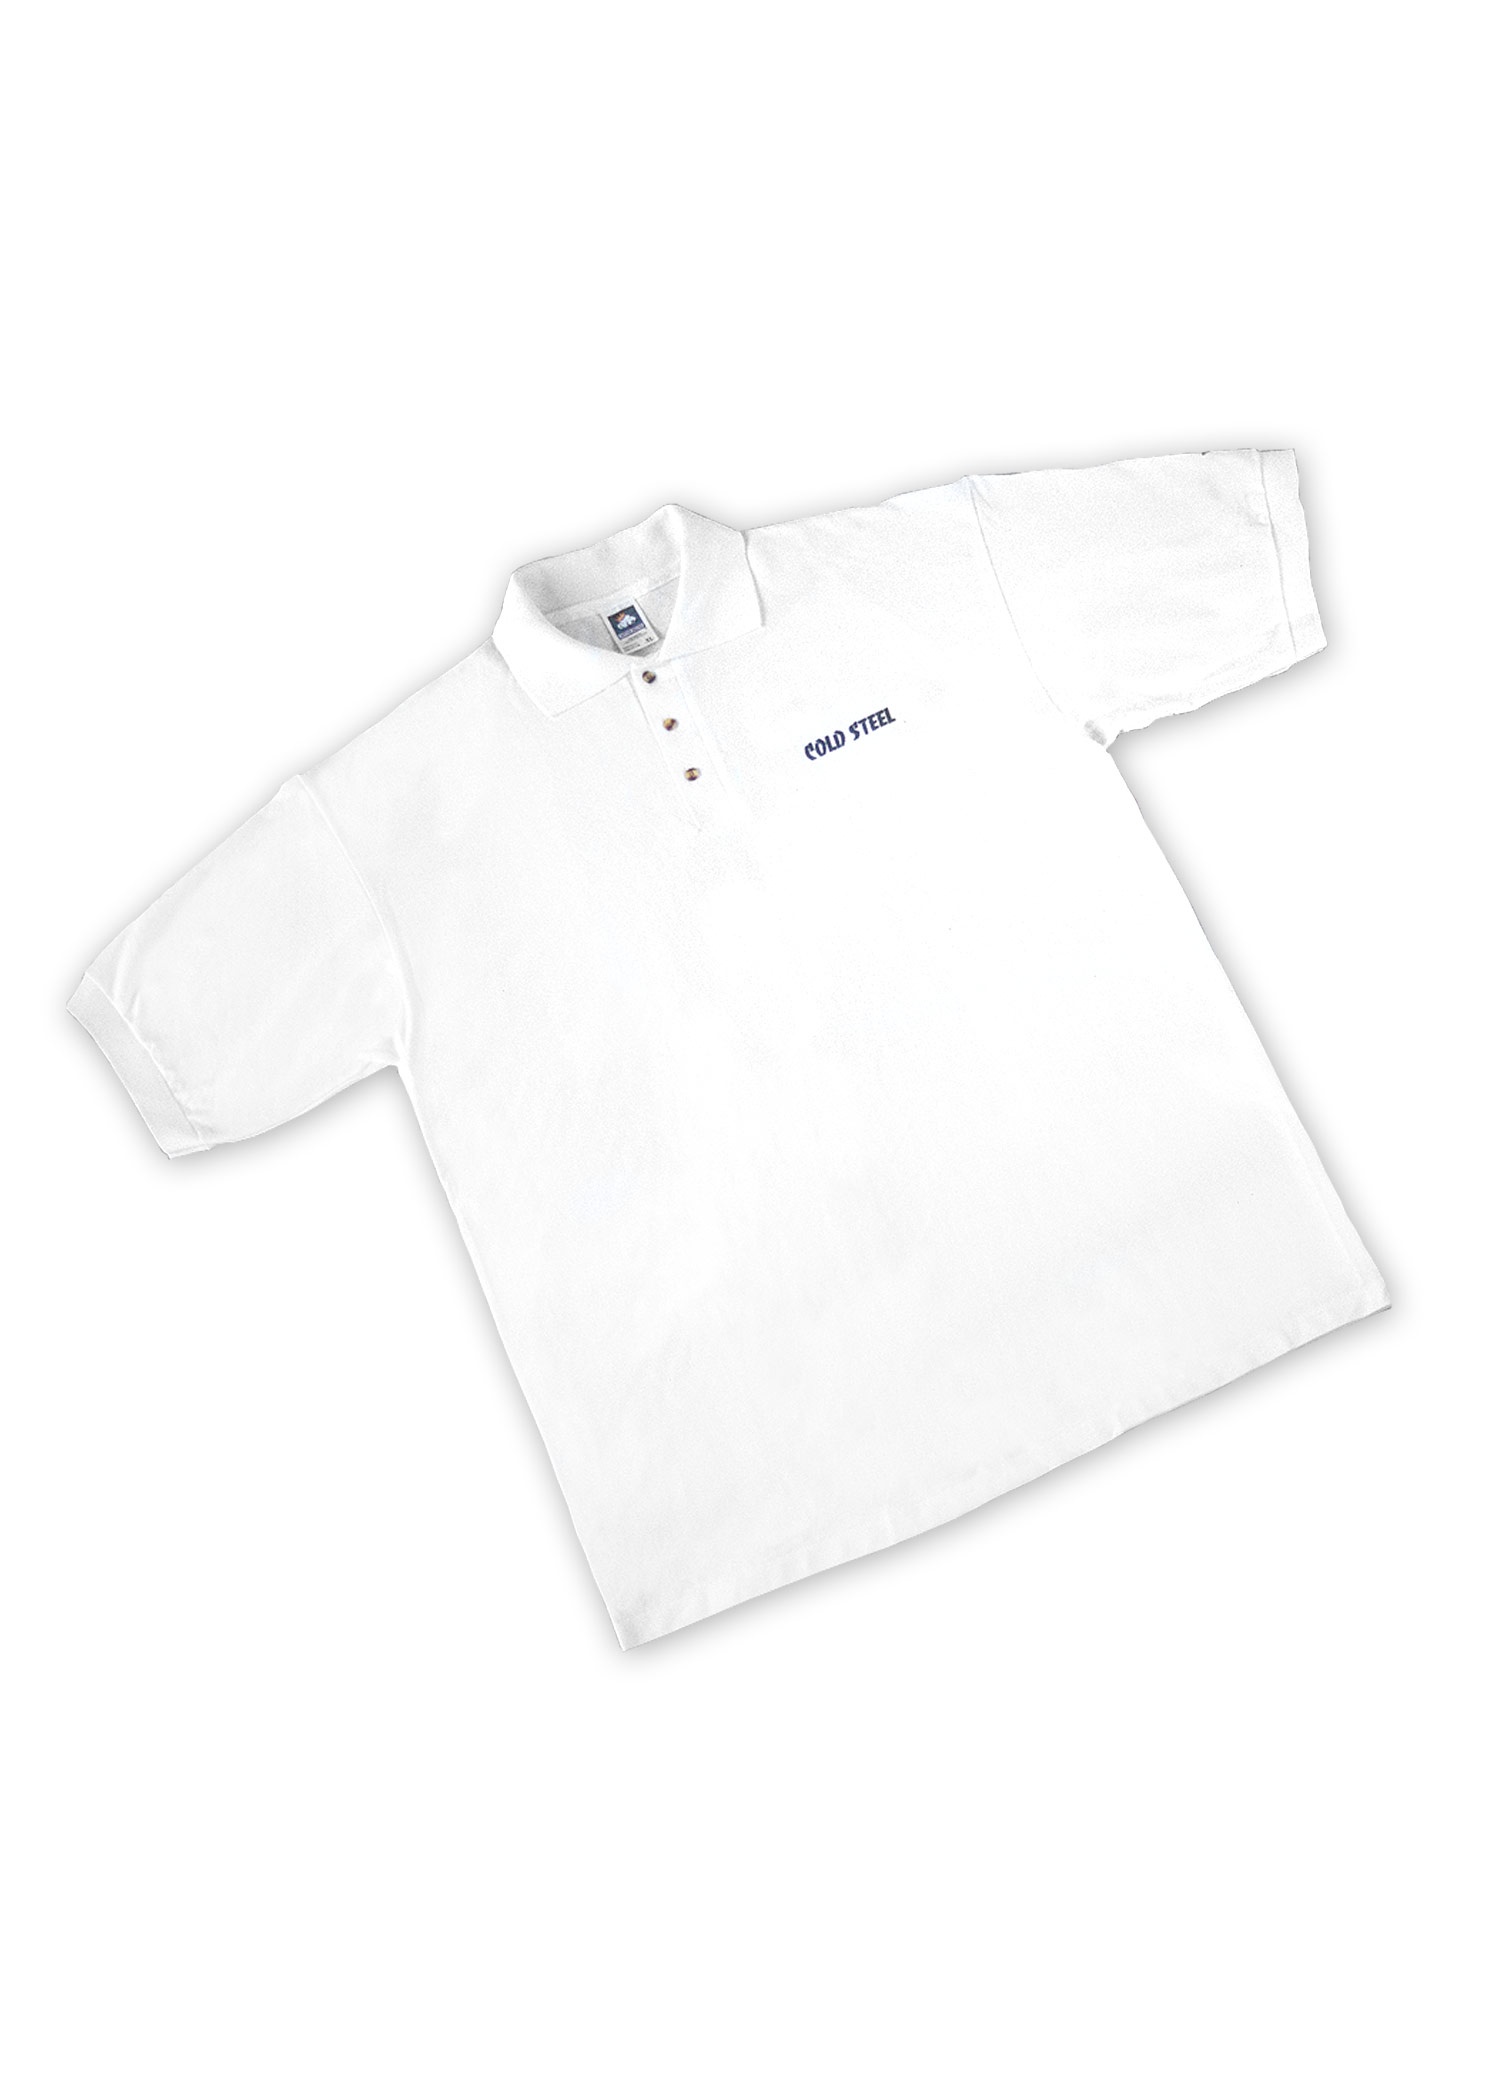 Cold Steel Poloshirt, weiß, Größe XL